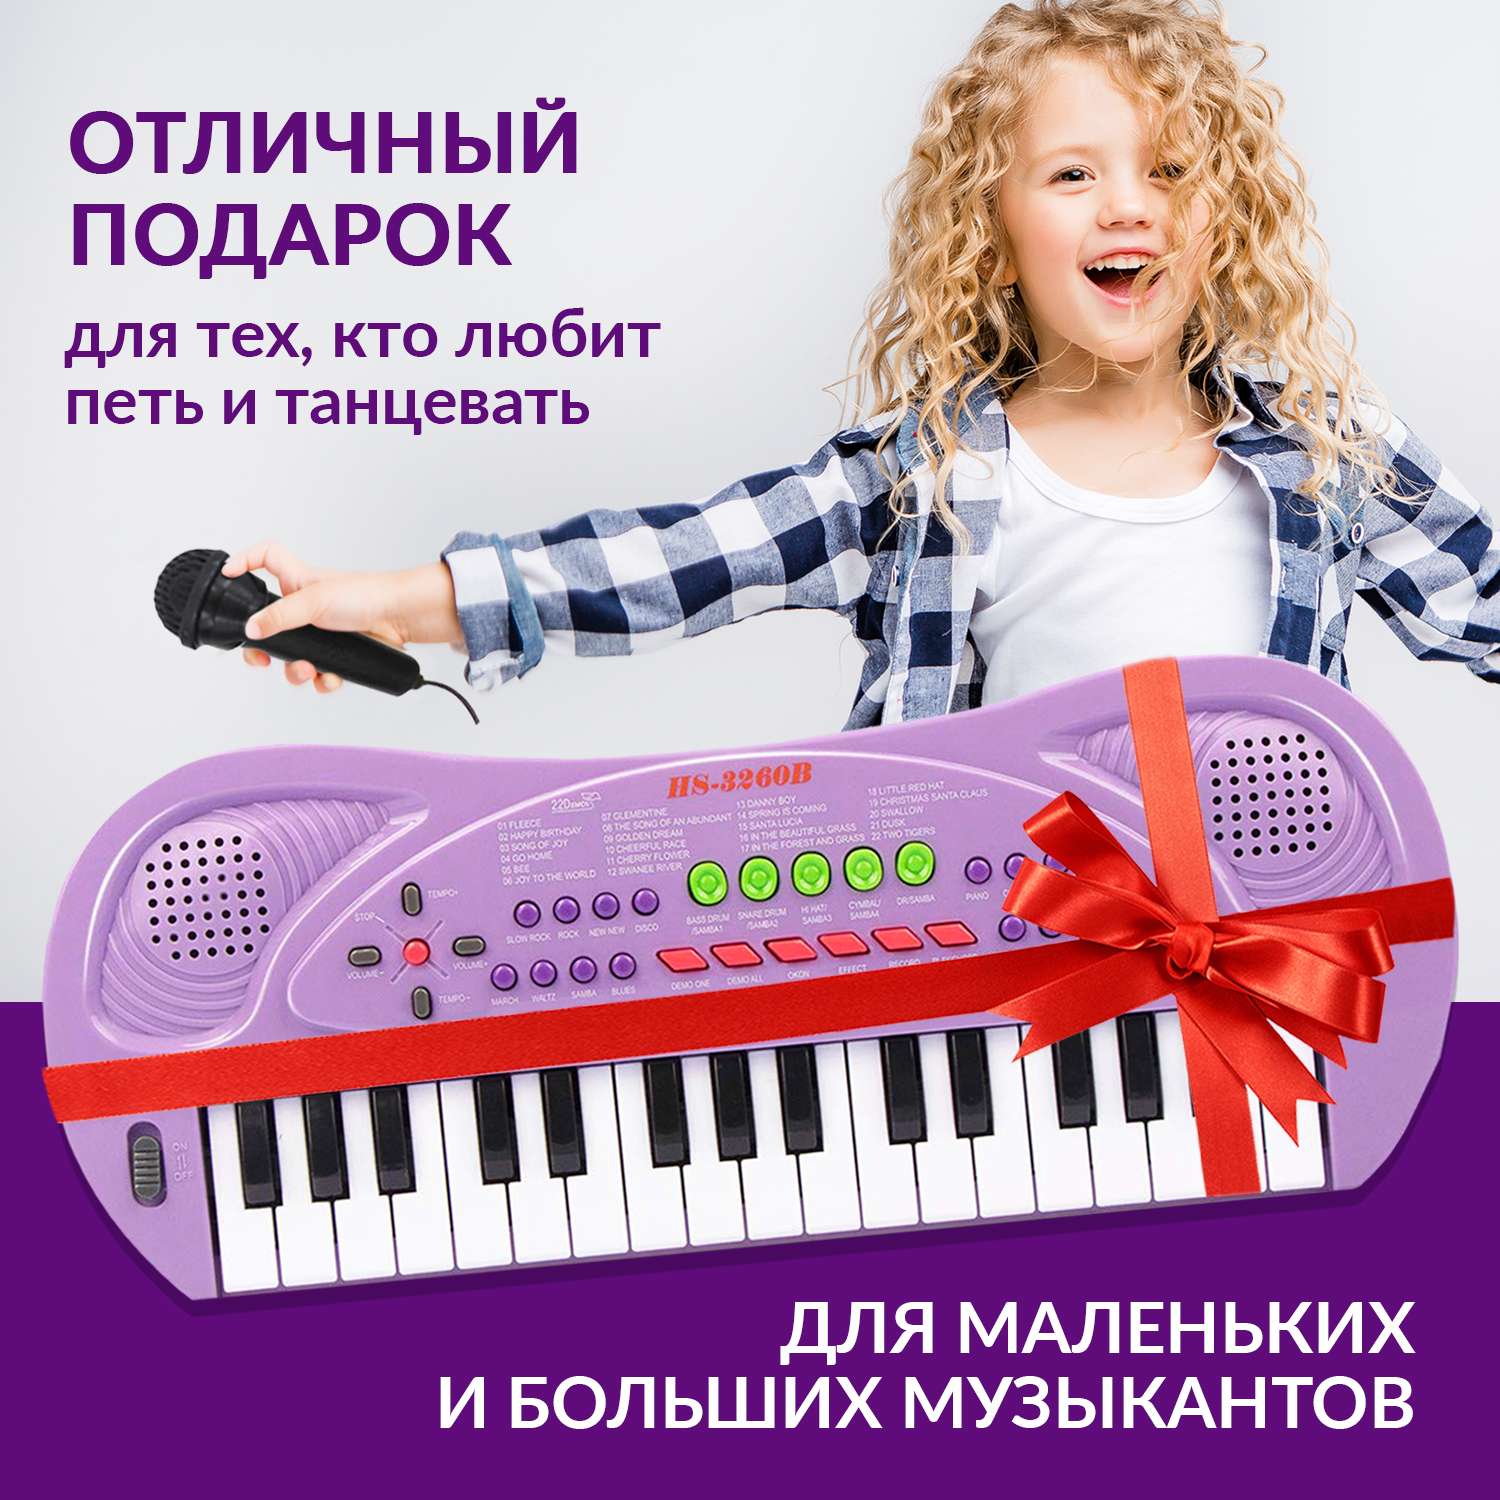 Детское пианино FAIRYMARY синтезатор детский с микрофоном - фото 6